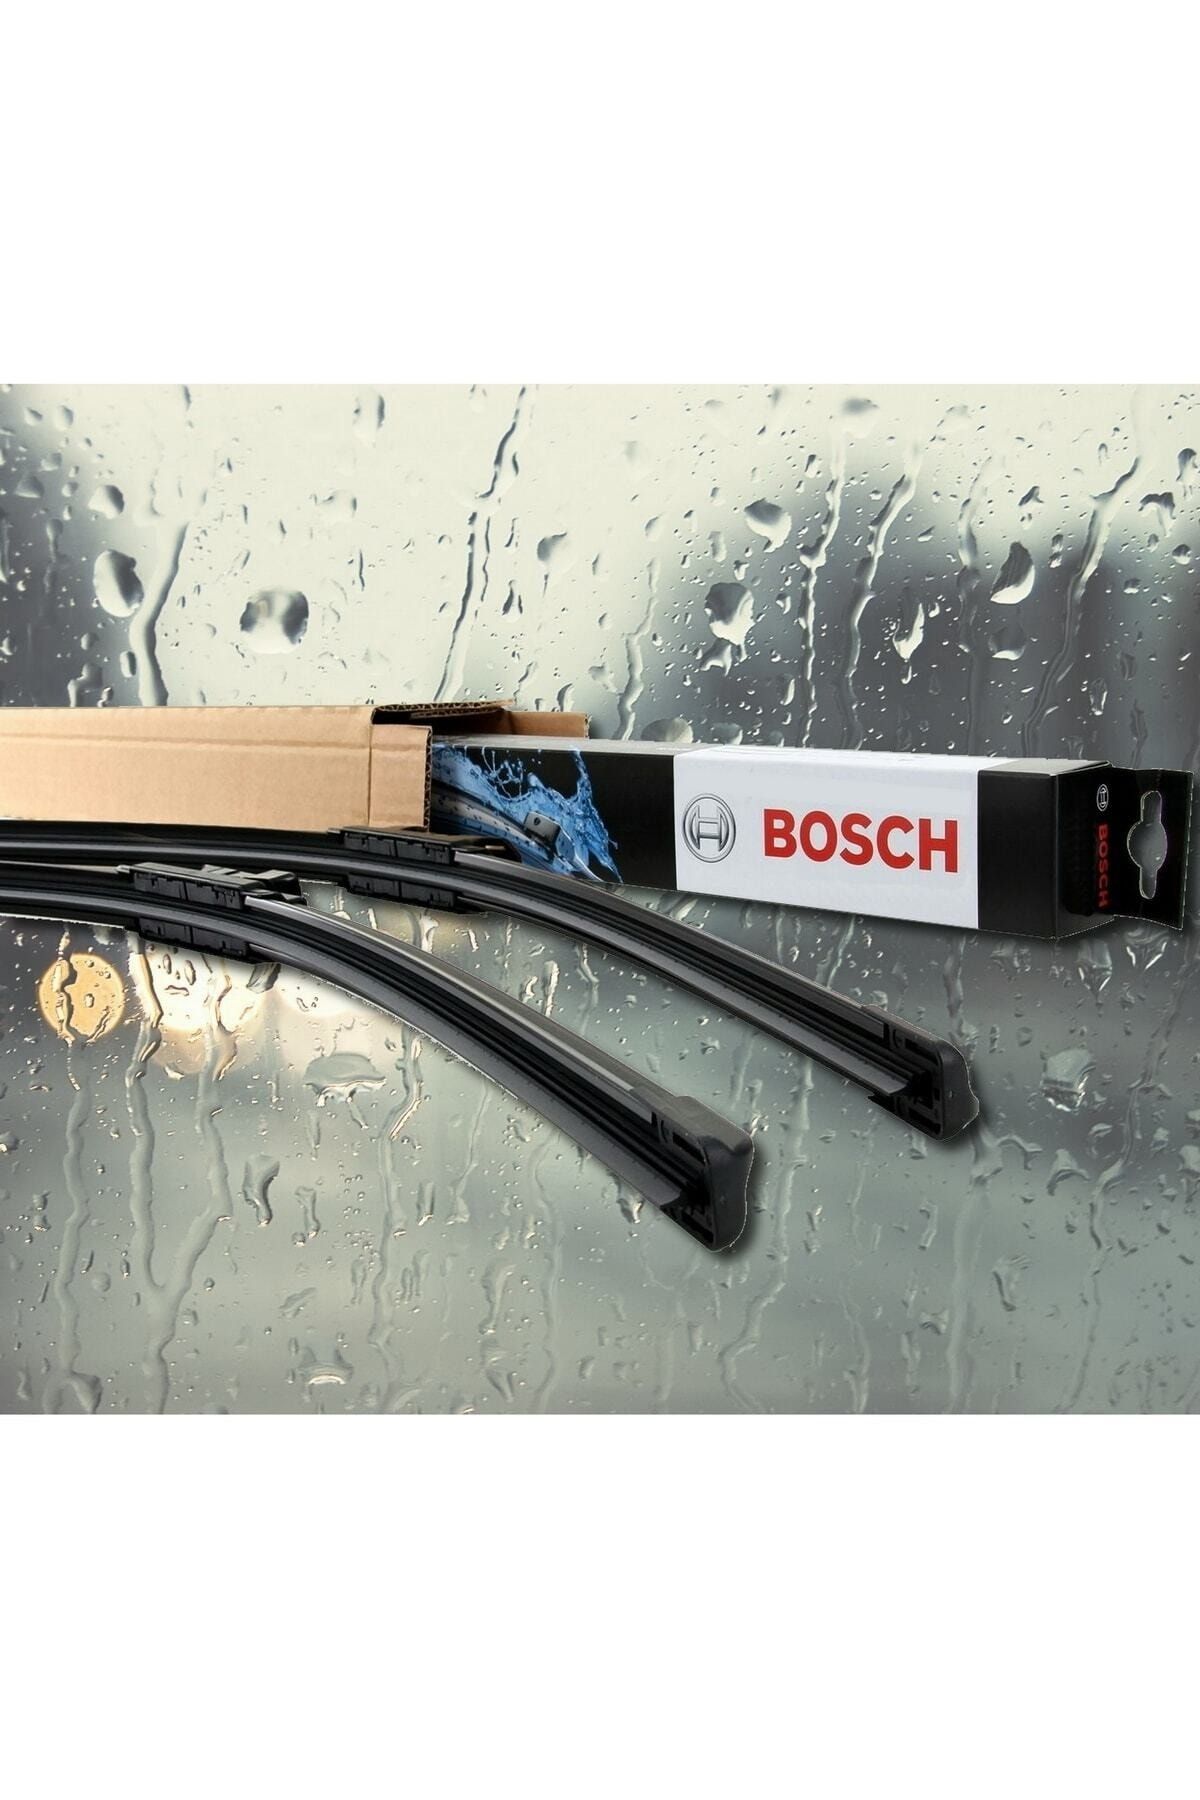 Bosch Usta Parçacı Toyota Corolla Silecek 2013-2017 Aerotwin Ar654s